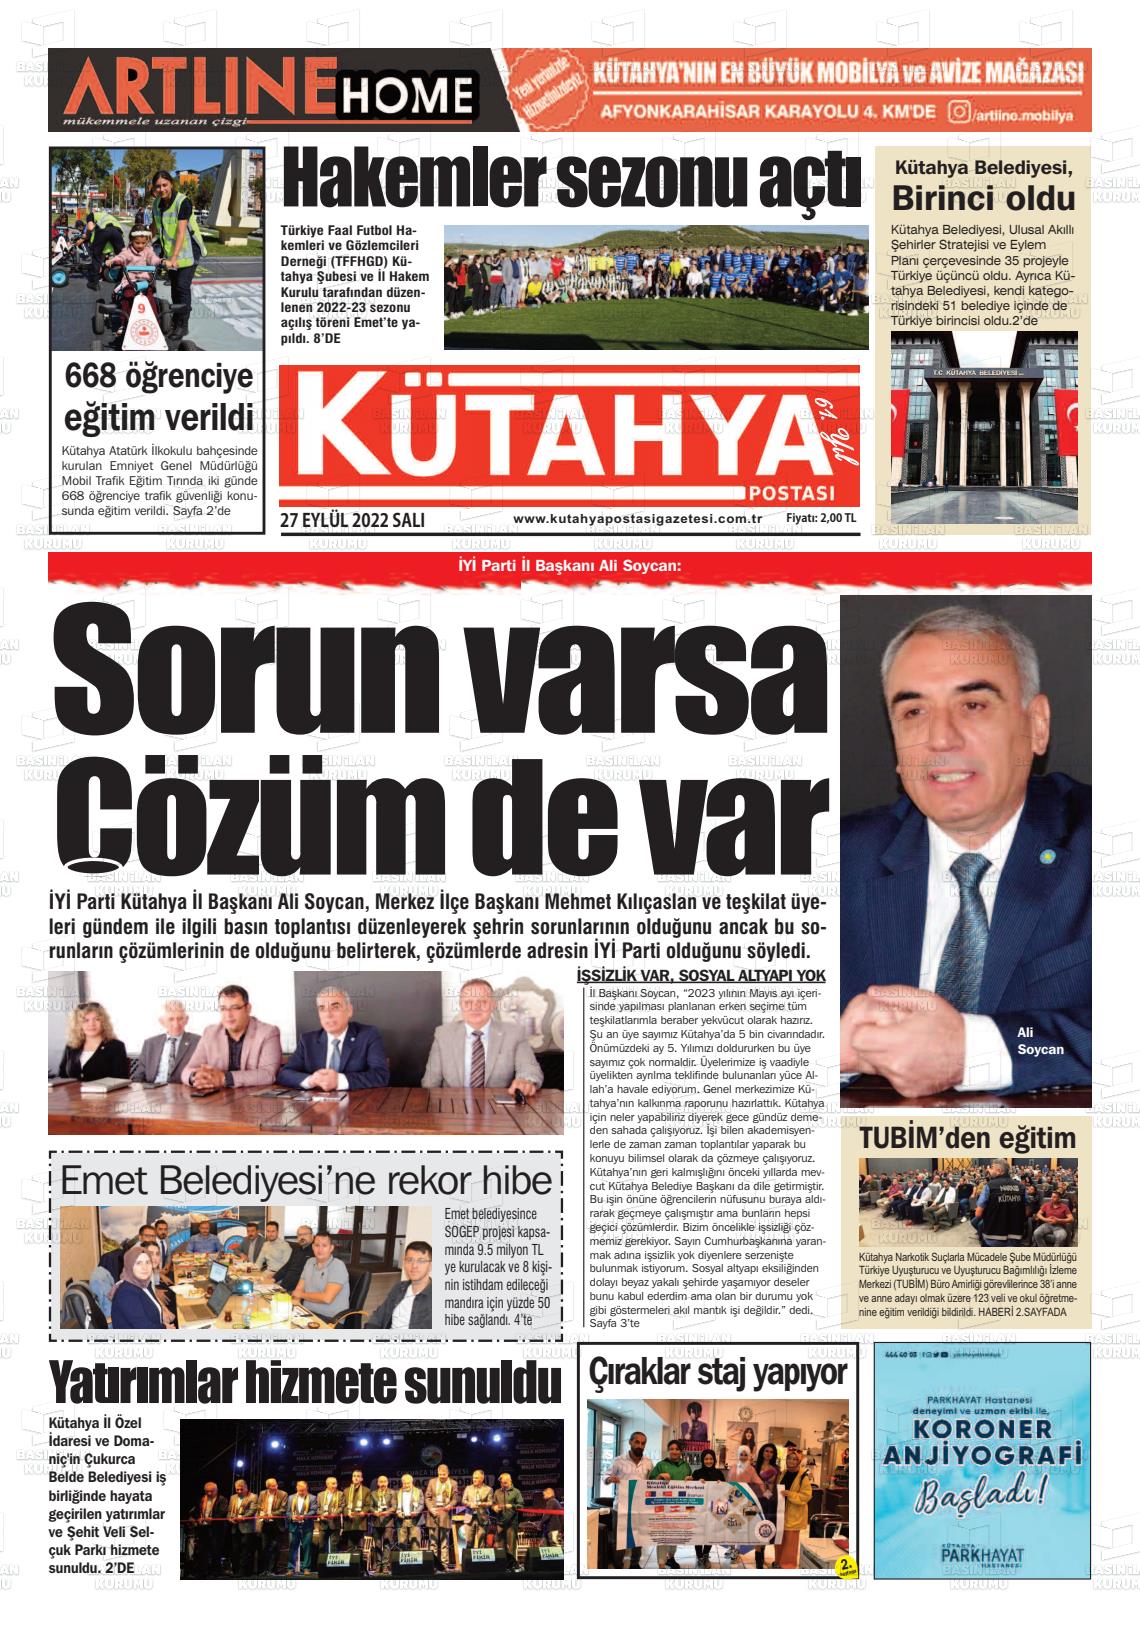 27 Eylül 2022 Kütahya Postası Gazete Manşeti